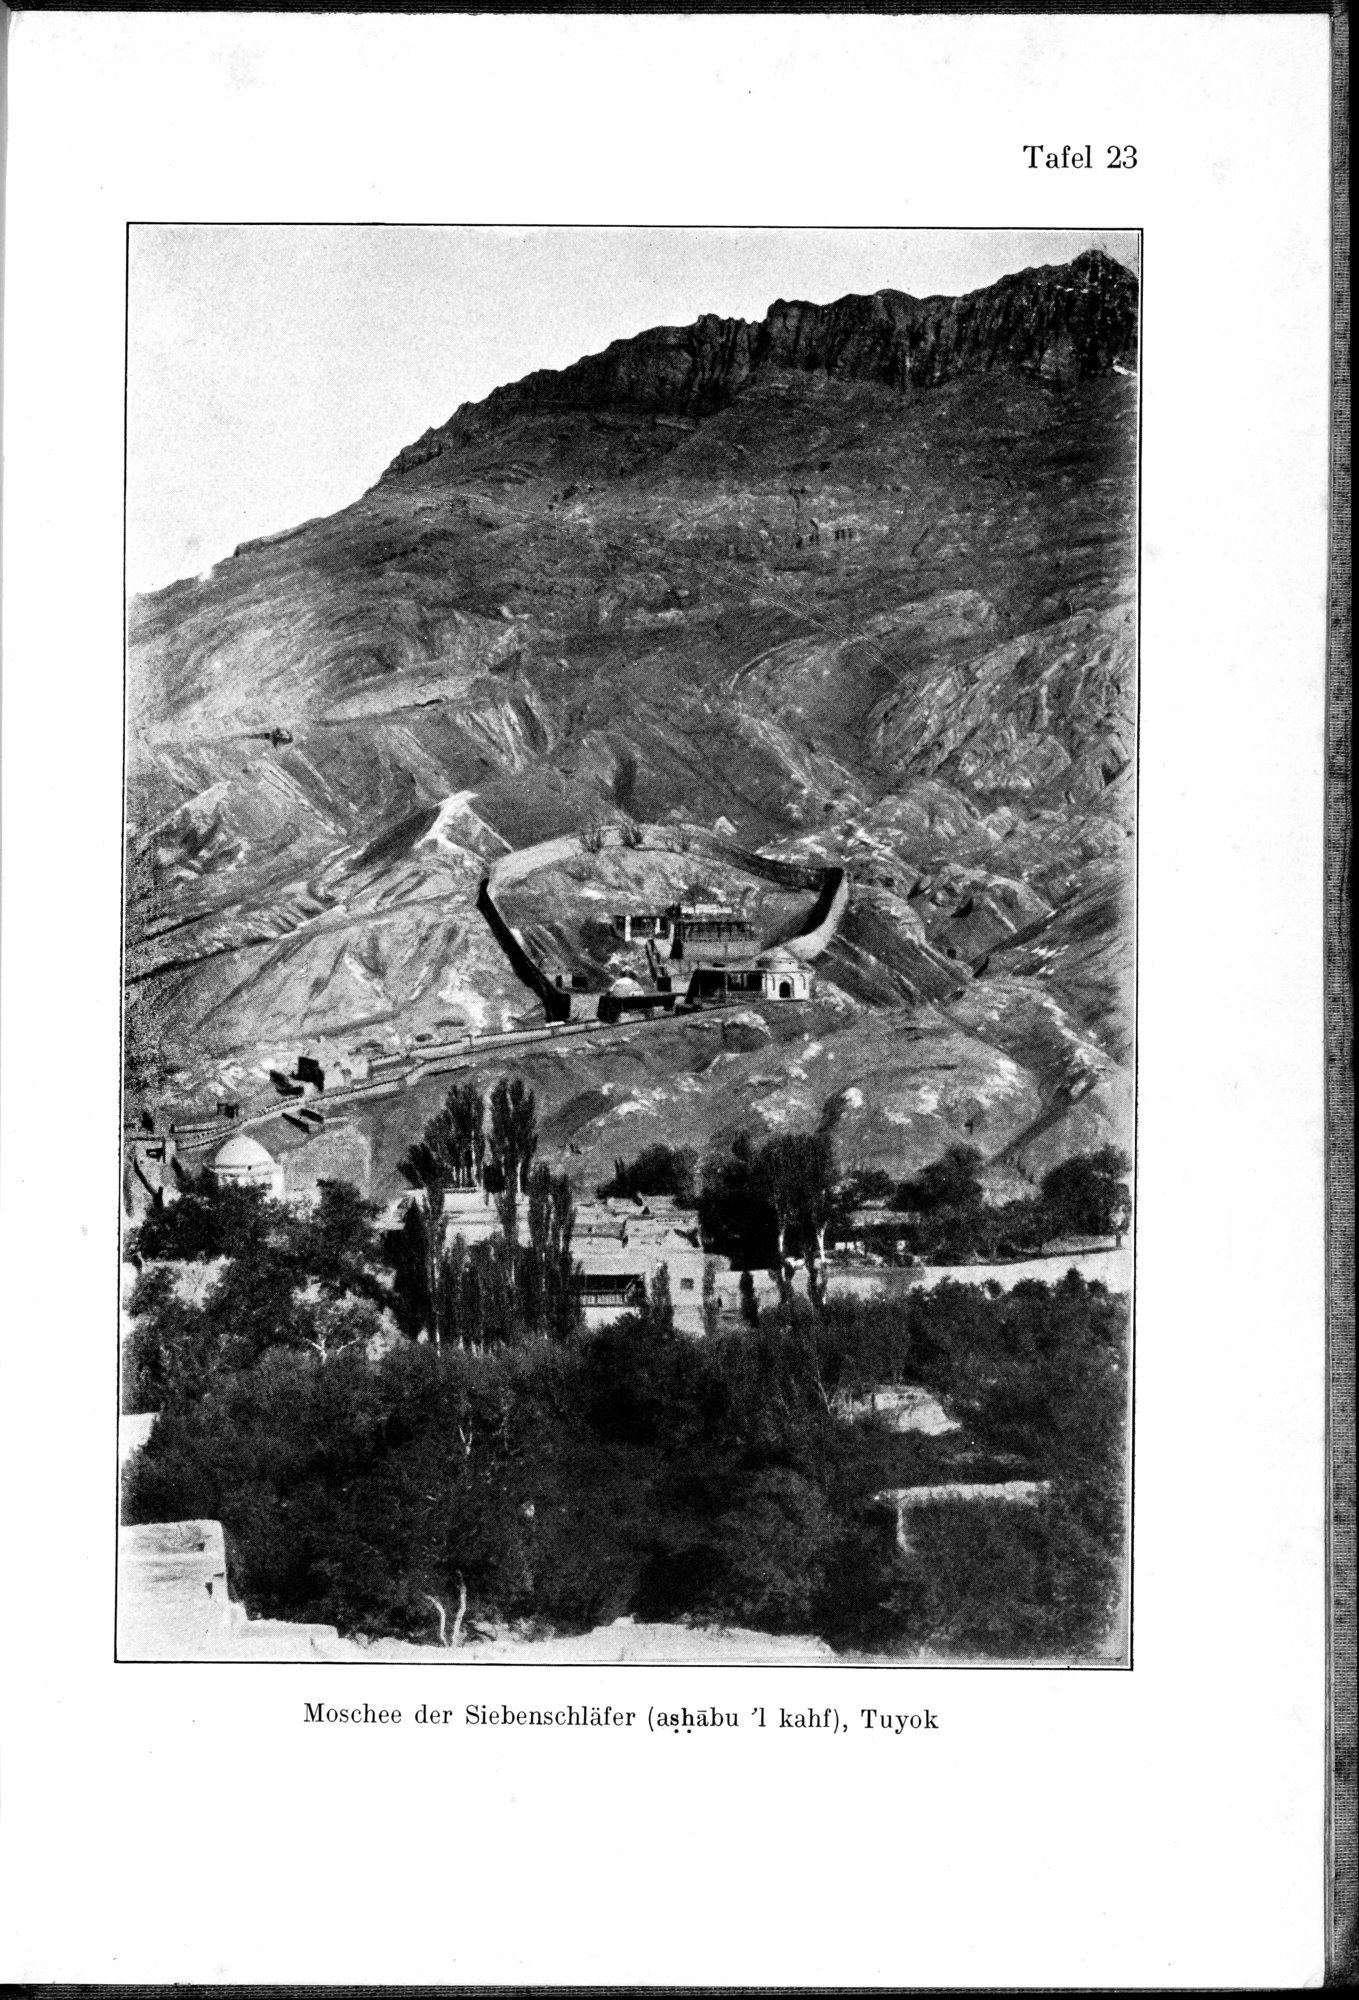 Auf Hellas Spuren in Ostturkistan : vol.1 / Page 119 (Grayscale High Resolution Image)